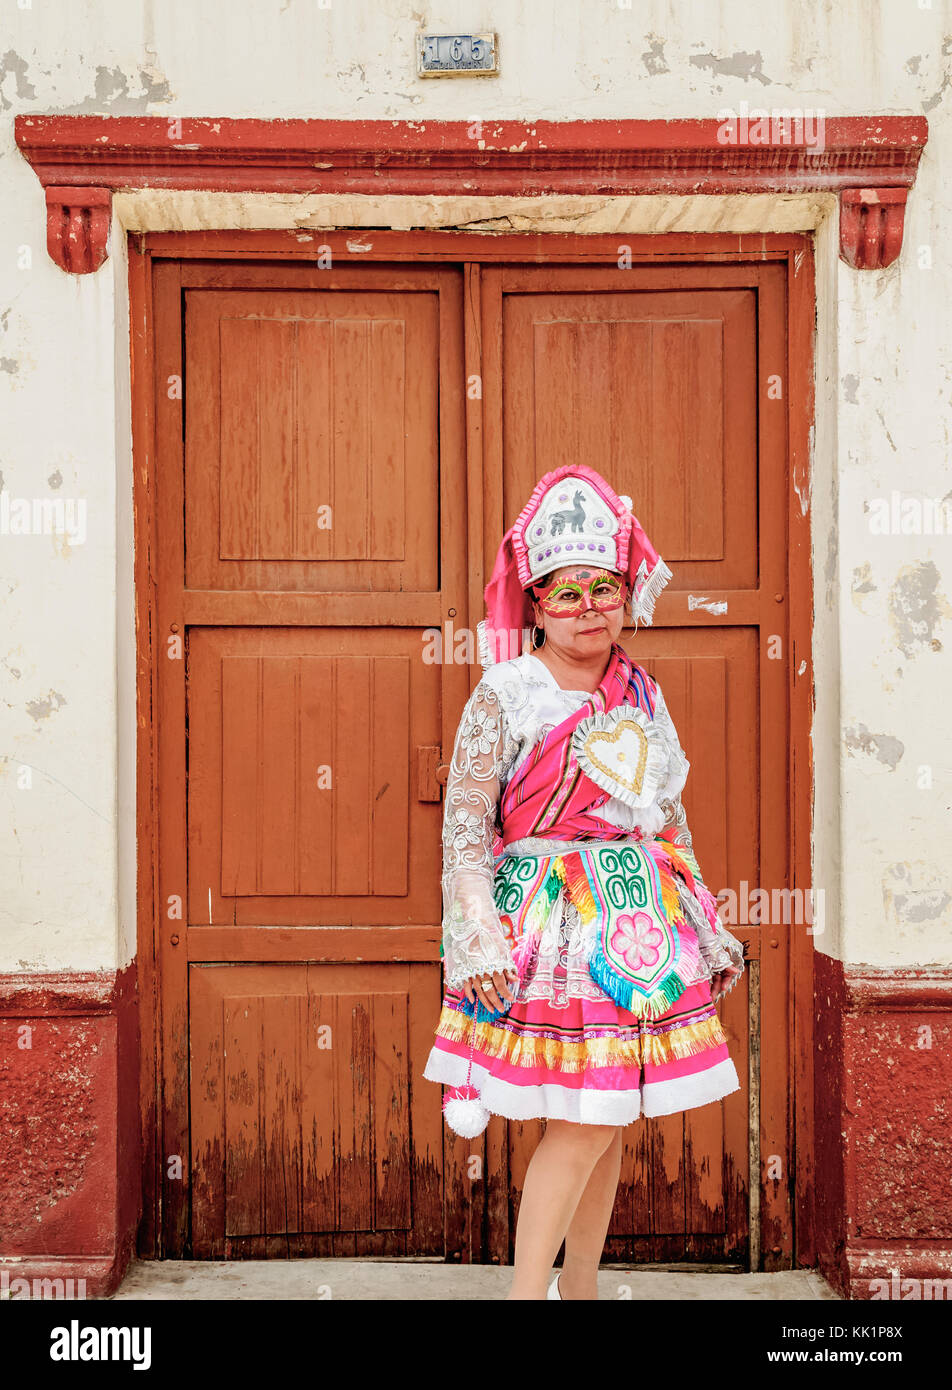 Adelante carrete cualquier cosa Lady in traditional clothing, Fiesta de la Virgen de la Candelaria, Puno,  Peru Stock Photo - Alamy